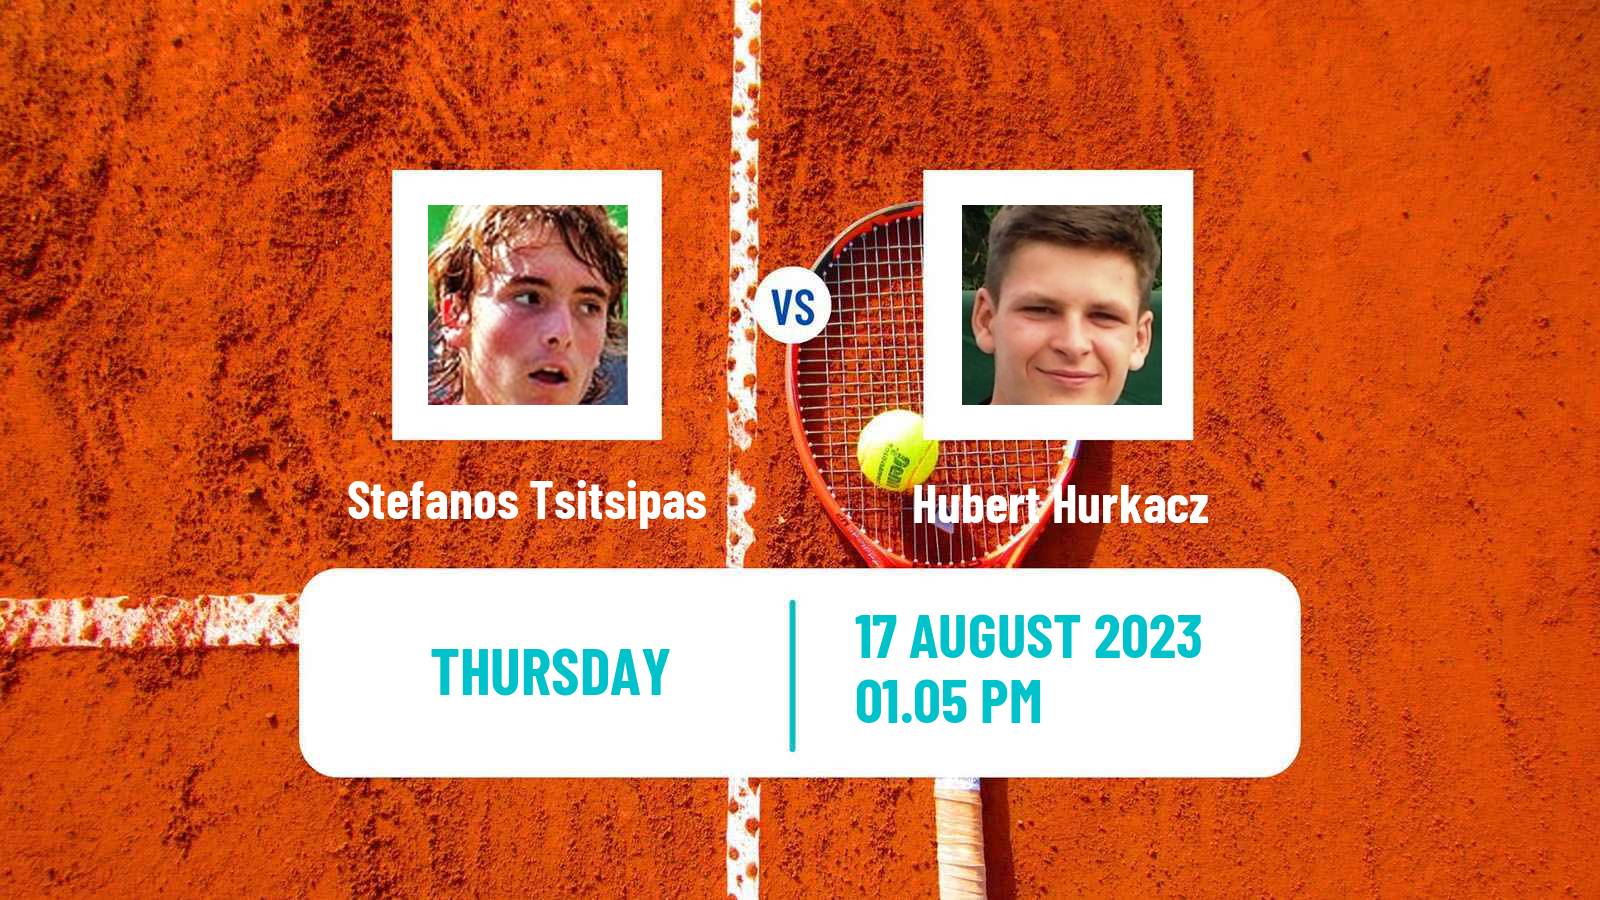 Tennis ATP Cincinnati Stefanos Tsitsipas - Hubert Hurkacz